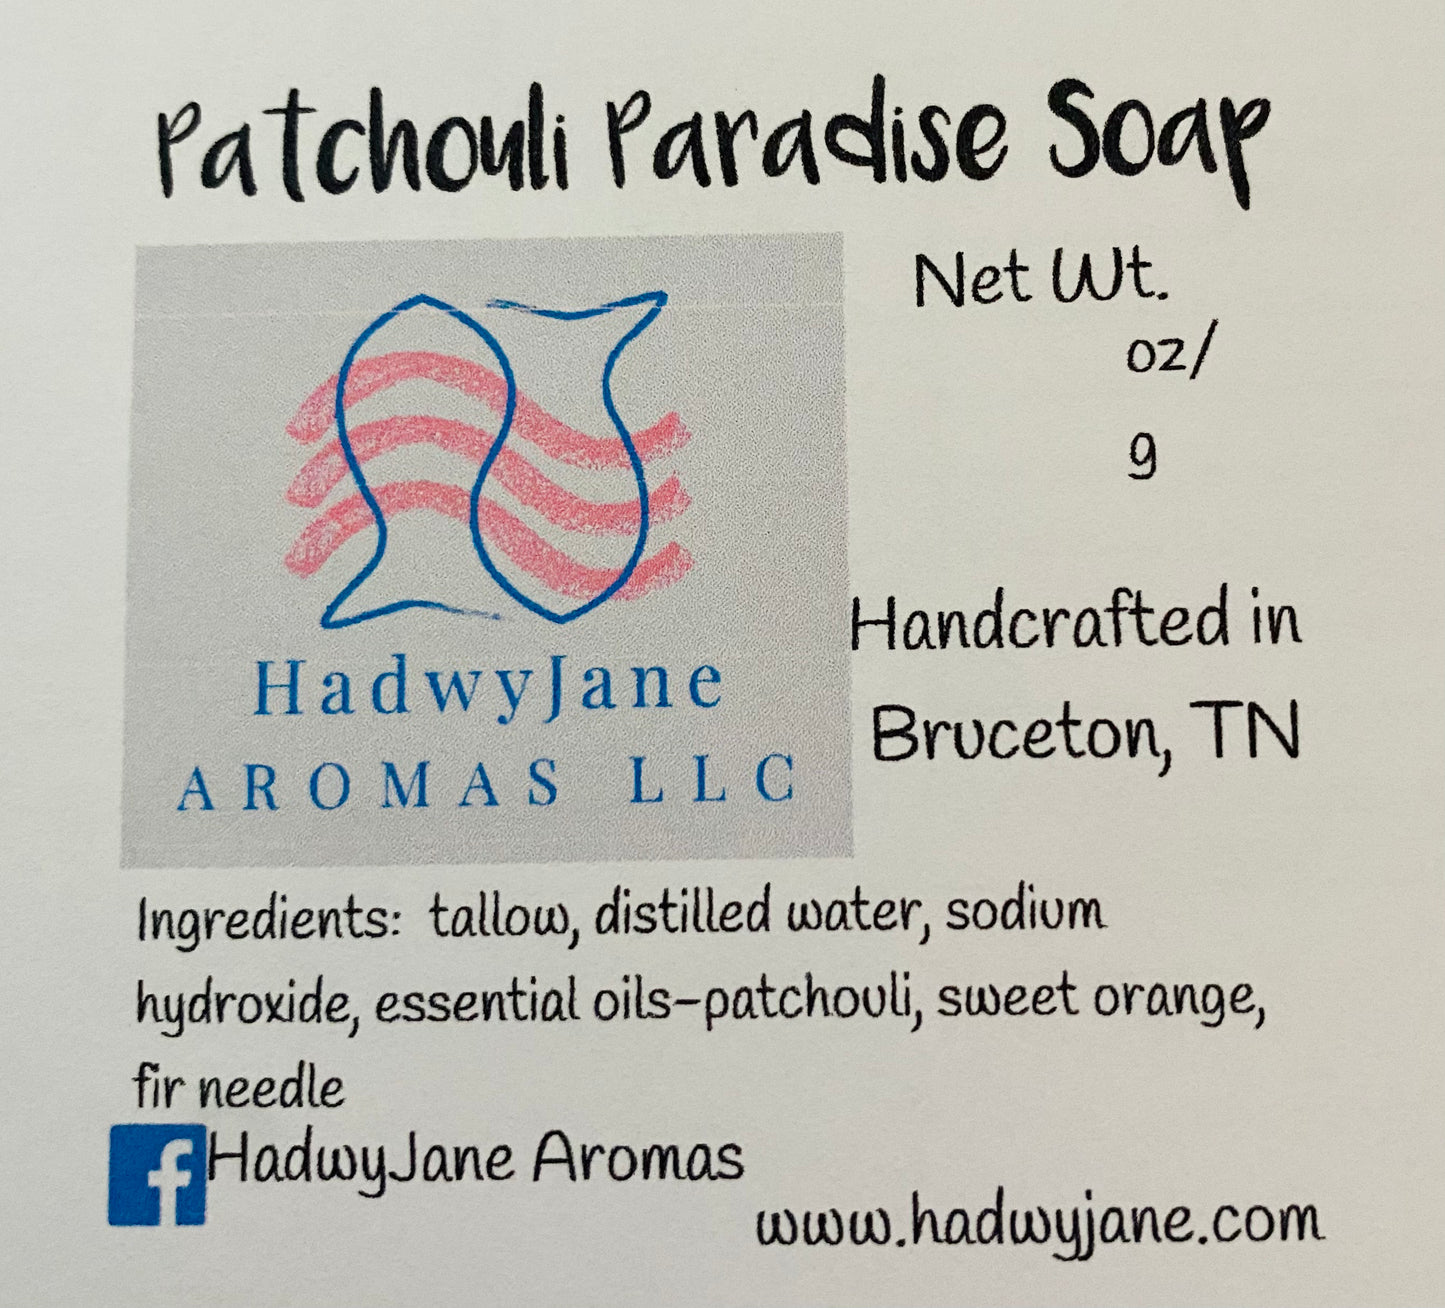 Patchouli Paradise Tallow Soap